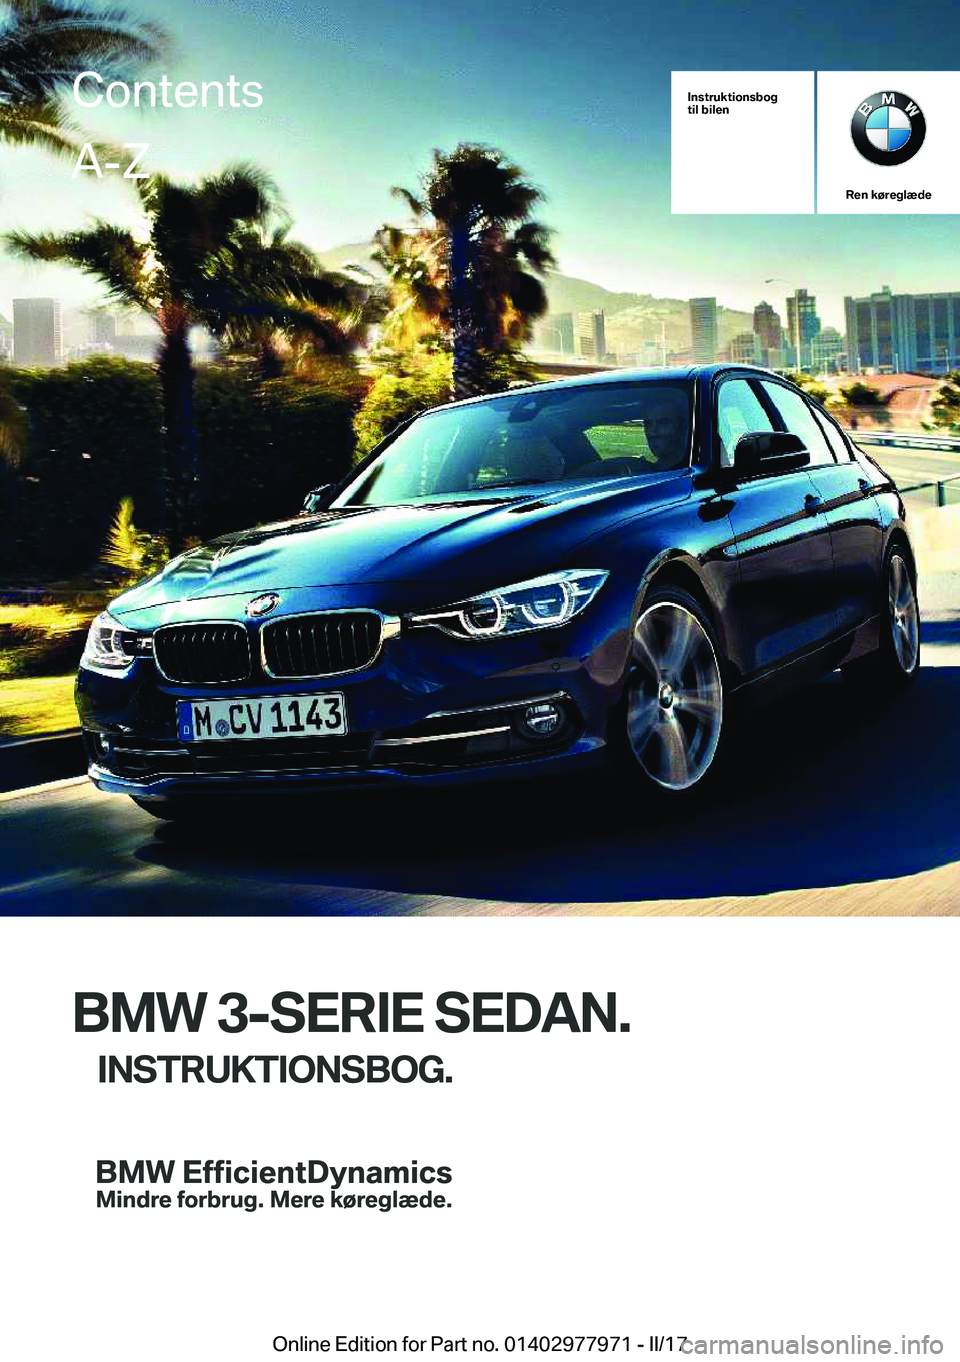 BMW 3 SERIES 2017  InstruktionsbØger (in Danish) �I�n�s�t�r�u�k�t�i�o�n�s�b�o�g
�t�i�l��b�i�l�e�n
�R�e�n��k�